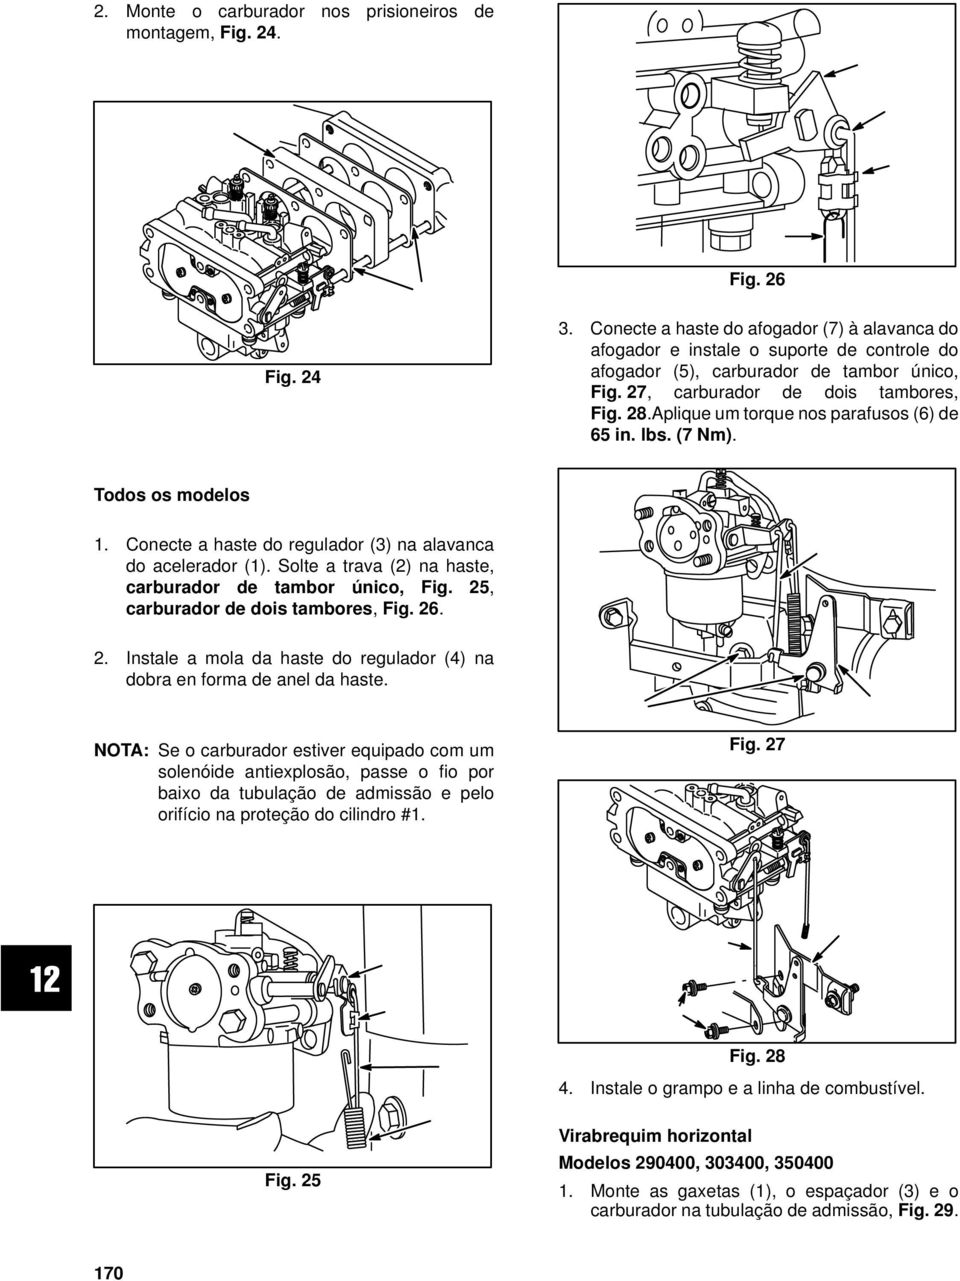 Aplique um torque nos parafusos (6) de 65in.lbs.(7Nm). Todos os modelos 1. Conecte a haste do regulador (3) na alavanca do acelerador (1). Solte a trava (2) na haste, carburador de tambor único, Fig.